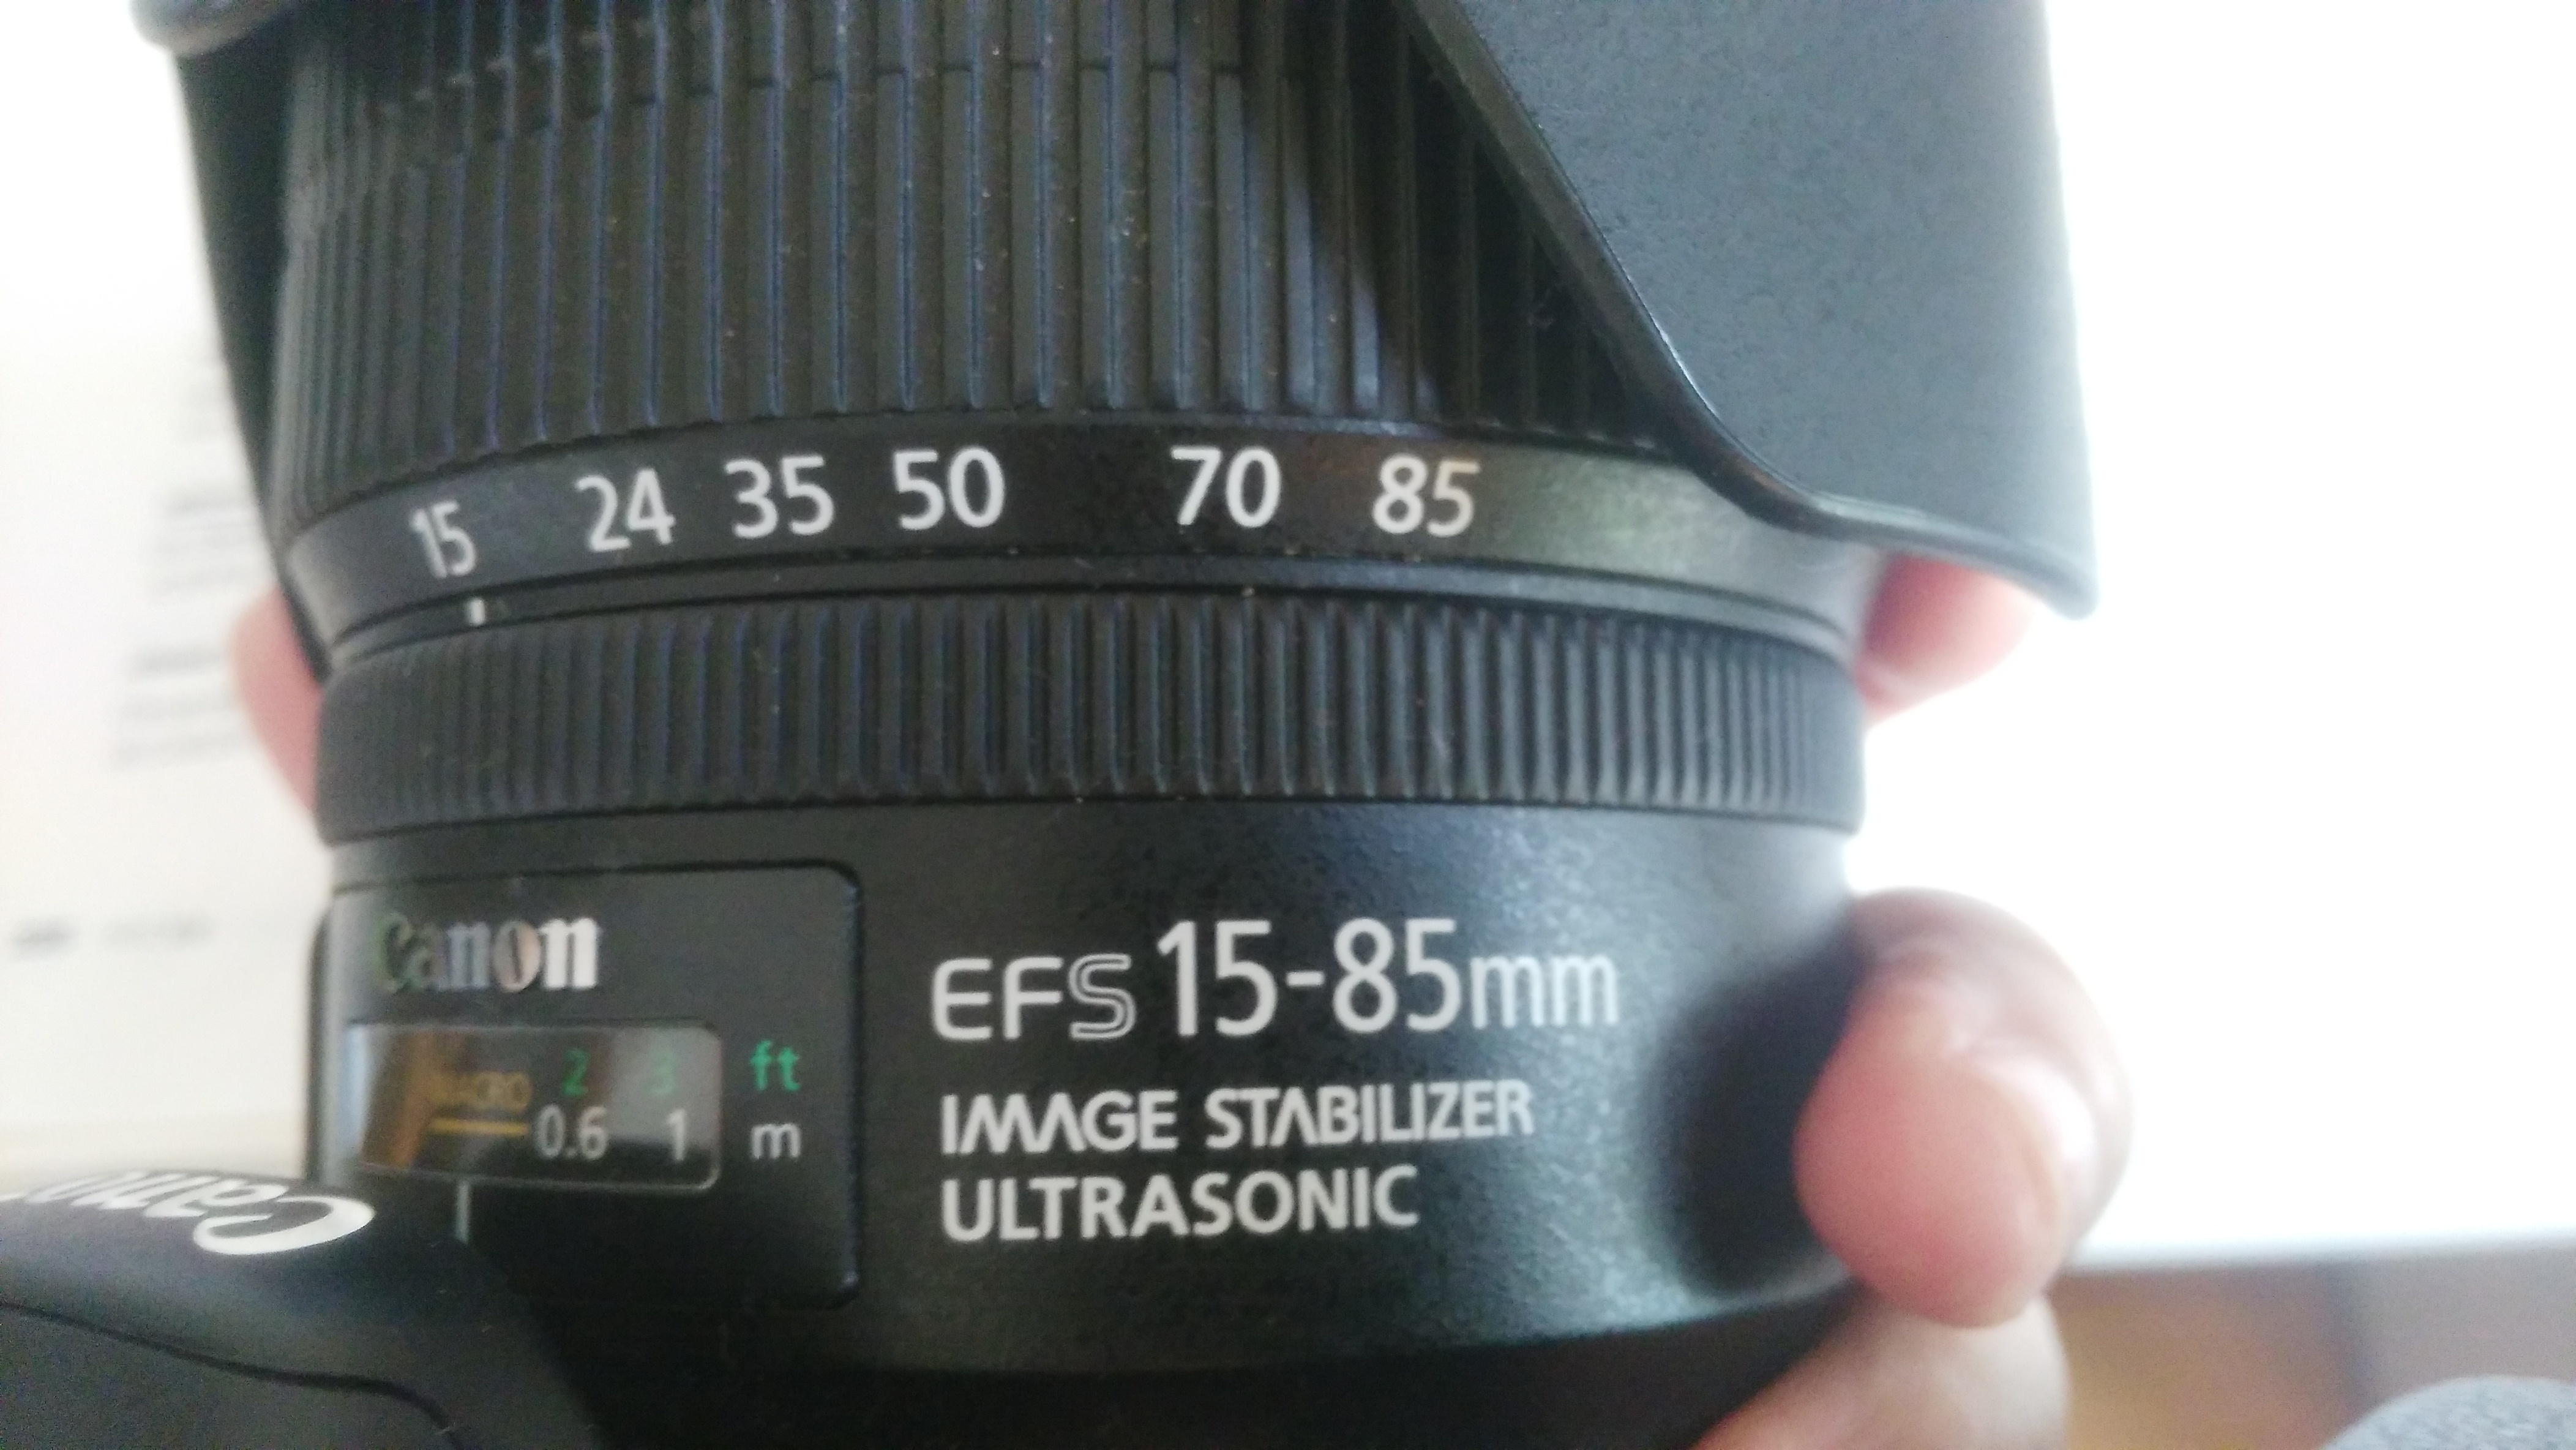 佳能 EF-S 15-85mm f/3.5-5.6 IS USM